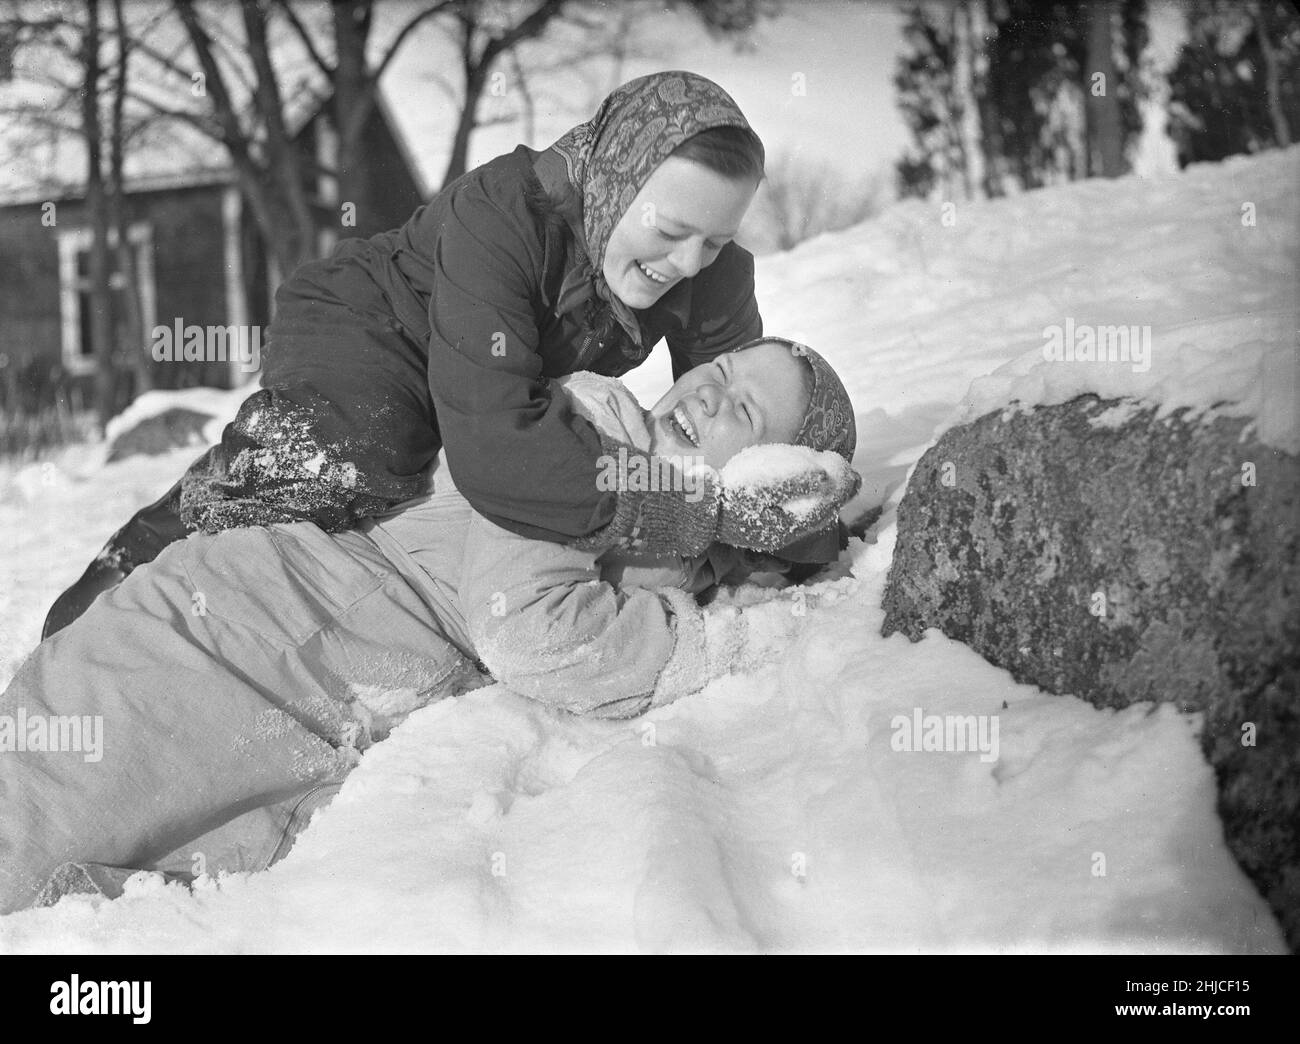 Inverno nel 1940s. Le due ragazze stanno giocando nella neve che ride. Uno sopra l'altro mettendo la neve in faccia. Sono lavoratori di una fattoria in Svezia durante la seconda guerra mondiale e hanno assunto il ruolo di lavoratori maschi quando invece erano nell'esercito svedese e spesso posti al confine svedese lontano. Rotebro Svezia Febbraio 1940. Kristoffersson Ref 78-3 Foto Stock